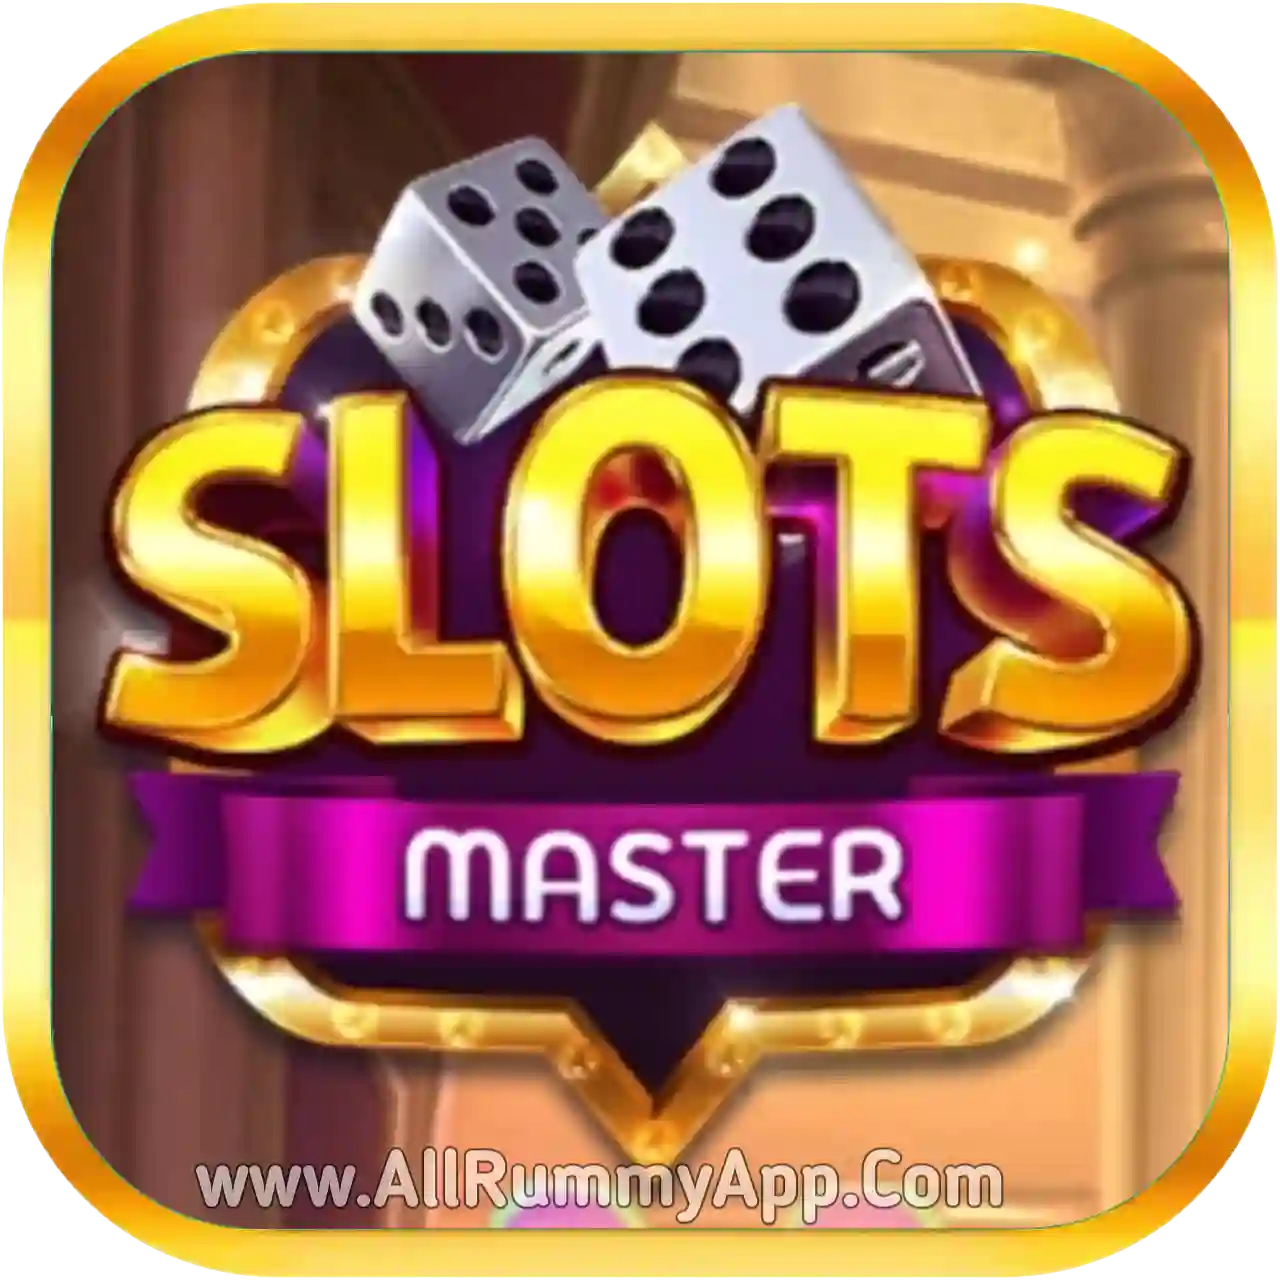 Slots Master - All Rummy App